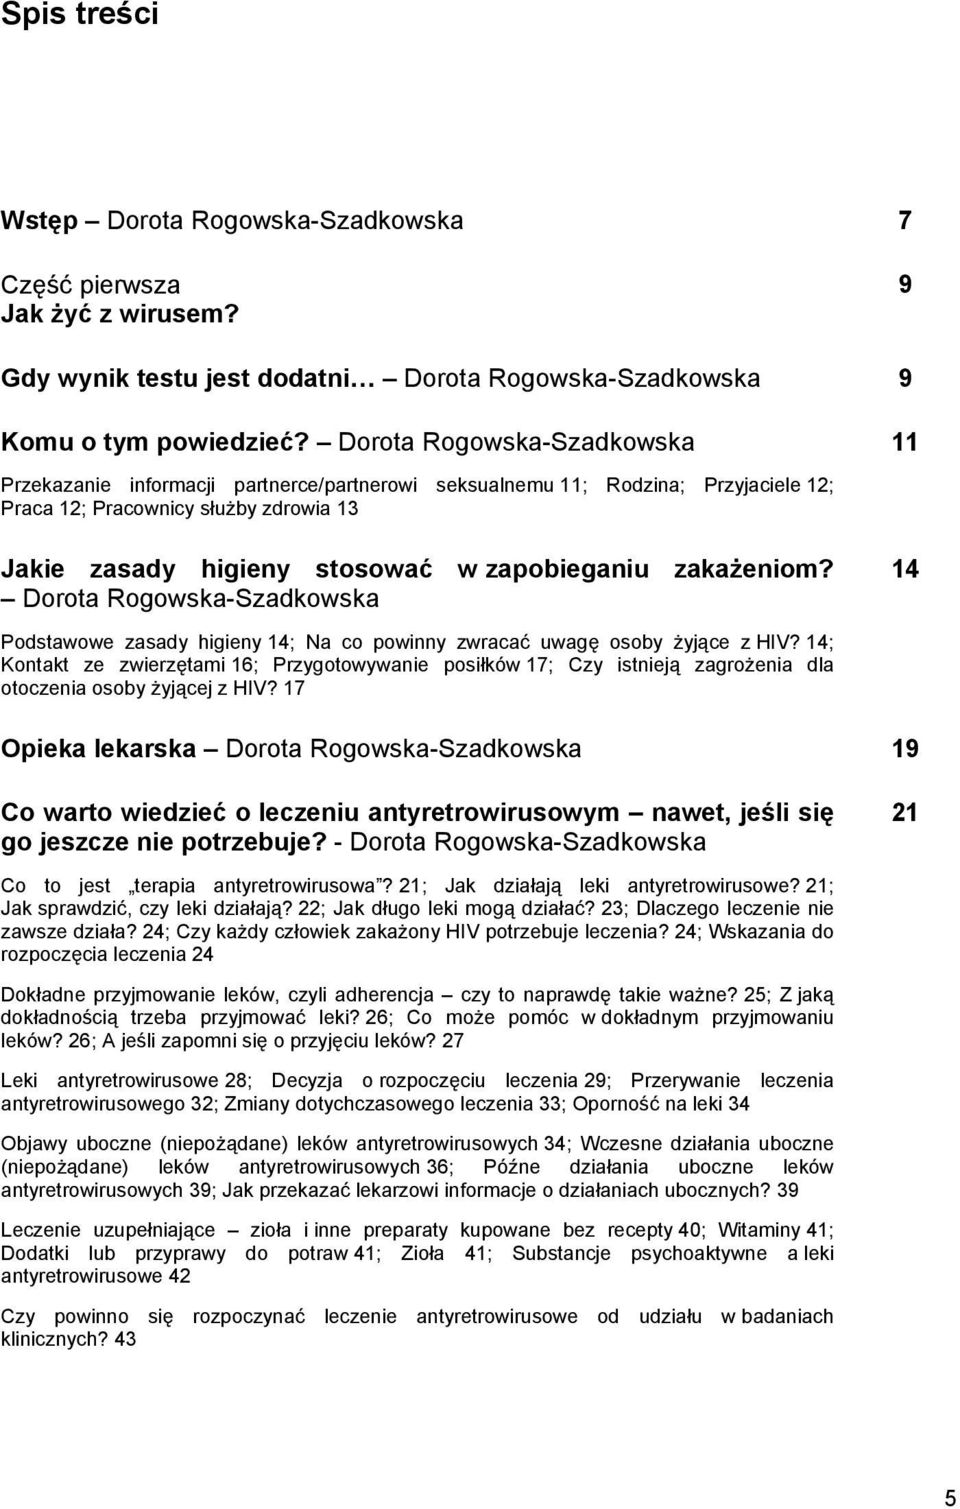 zakażeniom? Dorota Rogowska-Szadkowska 11 14 Podstawowe zasady higieny 14; Na co powinny zwracać uwagę osoby żyjące z HIV?